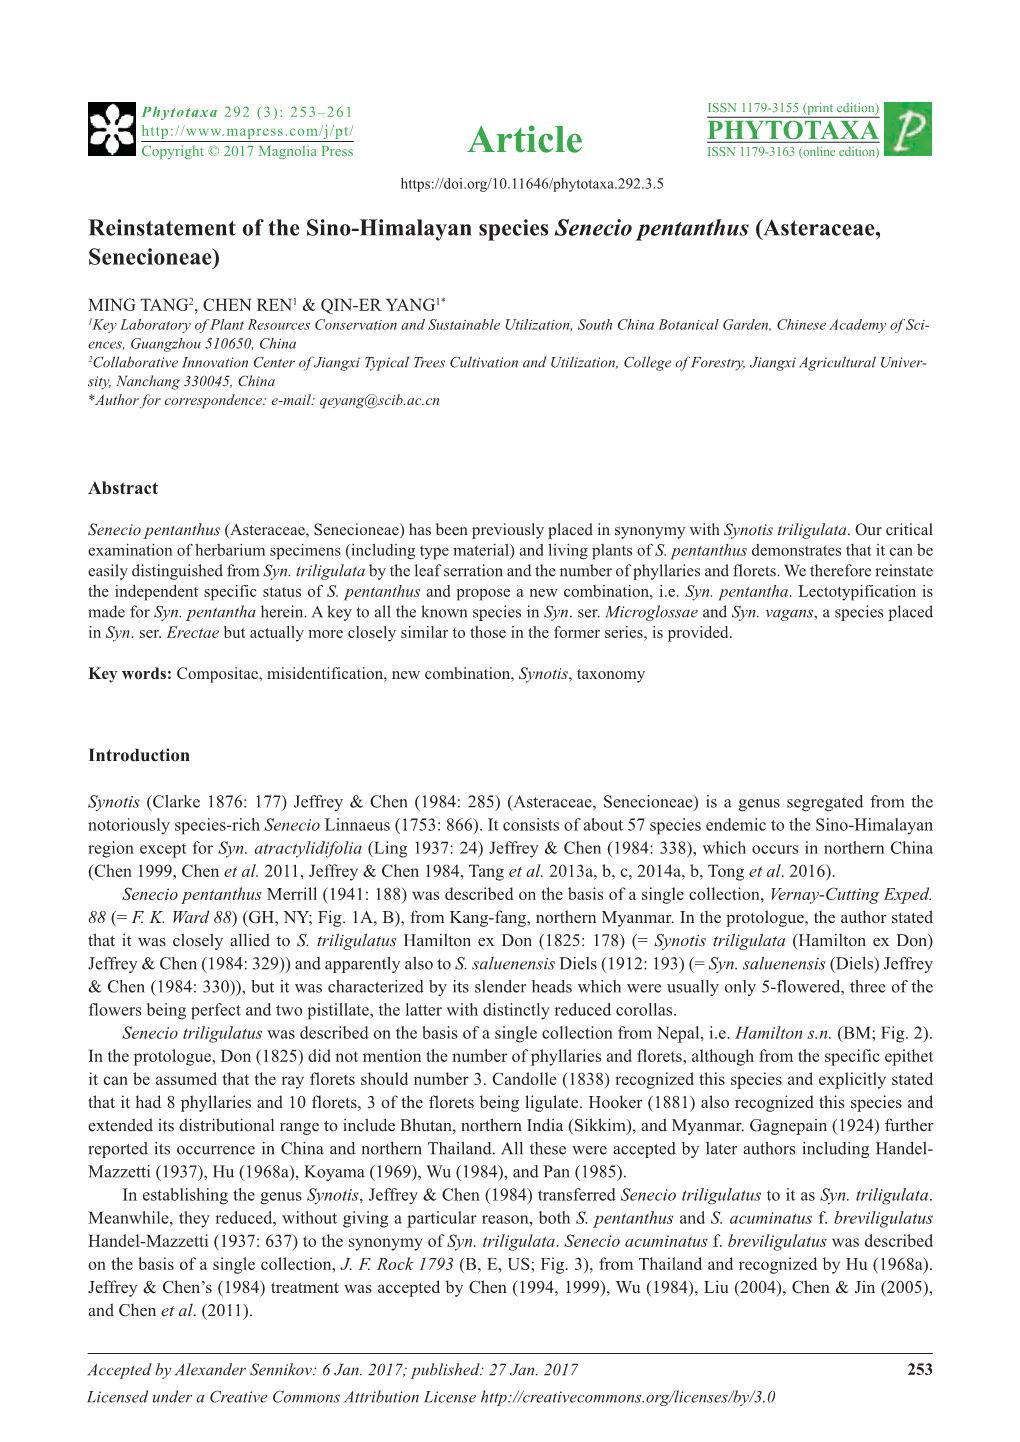 Reinstatement of the Sino-Himalayan Species Senecio Pentanthus (Asteraceae, Senecioneae)